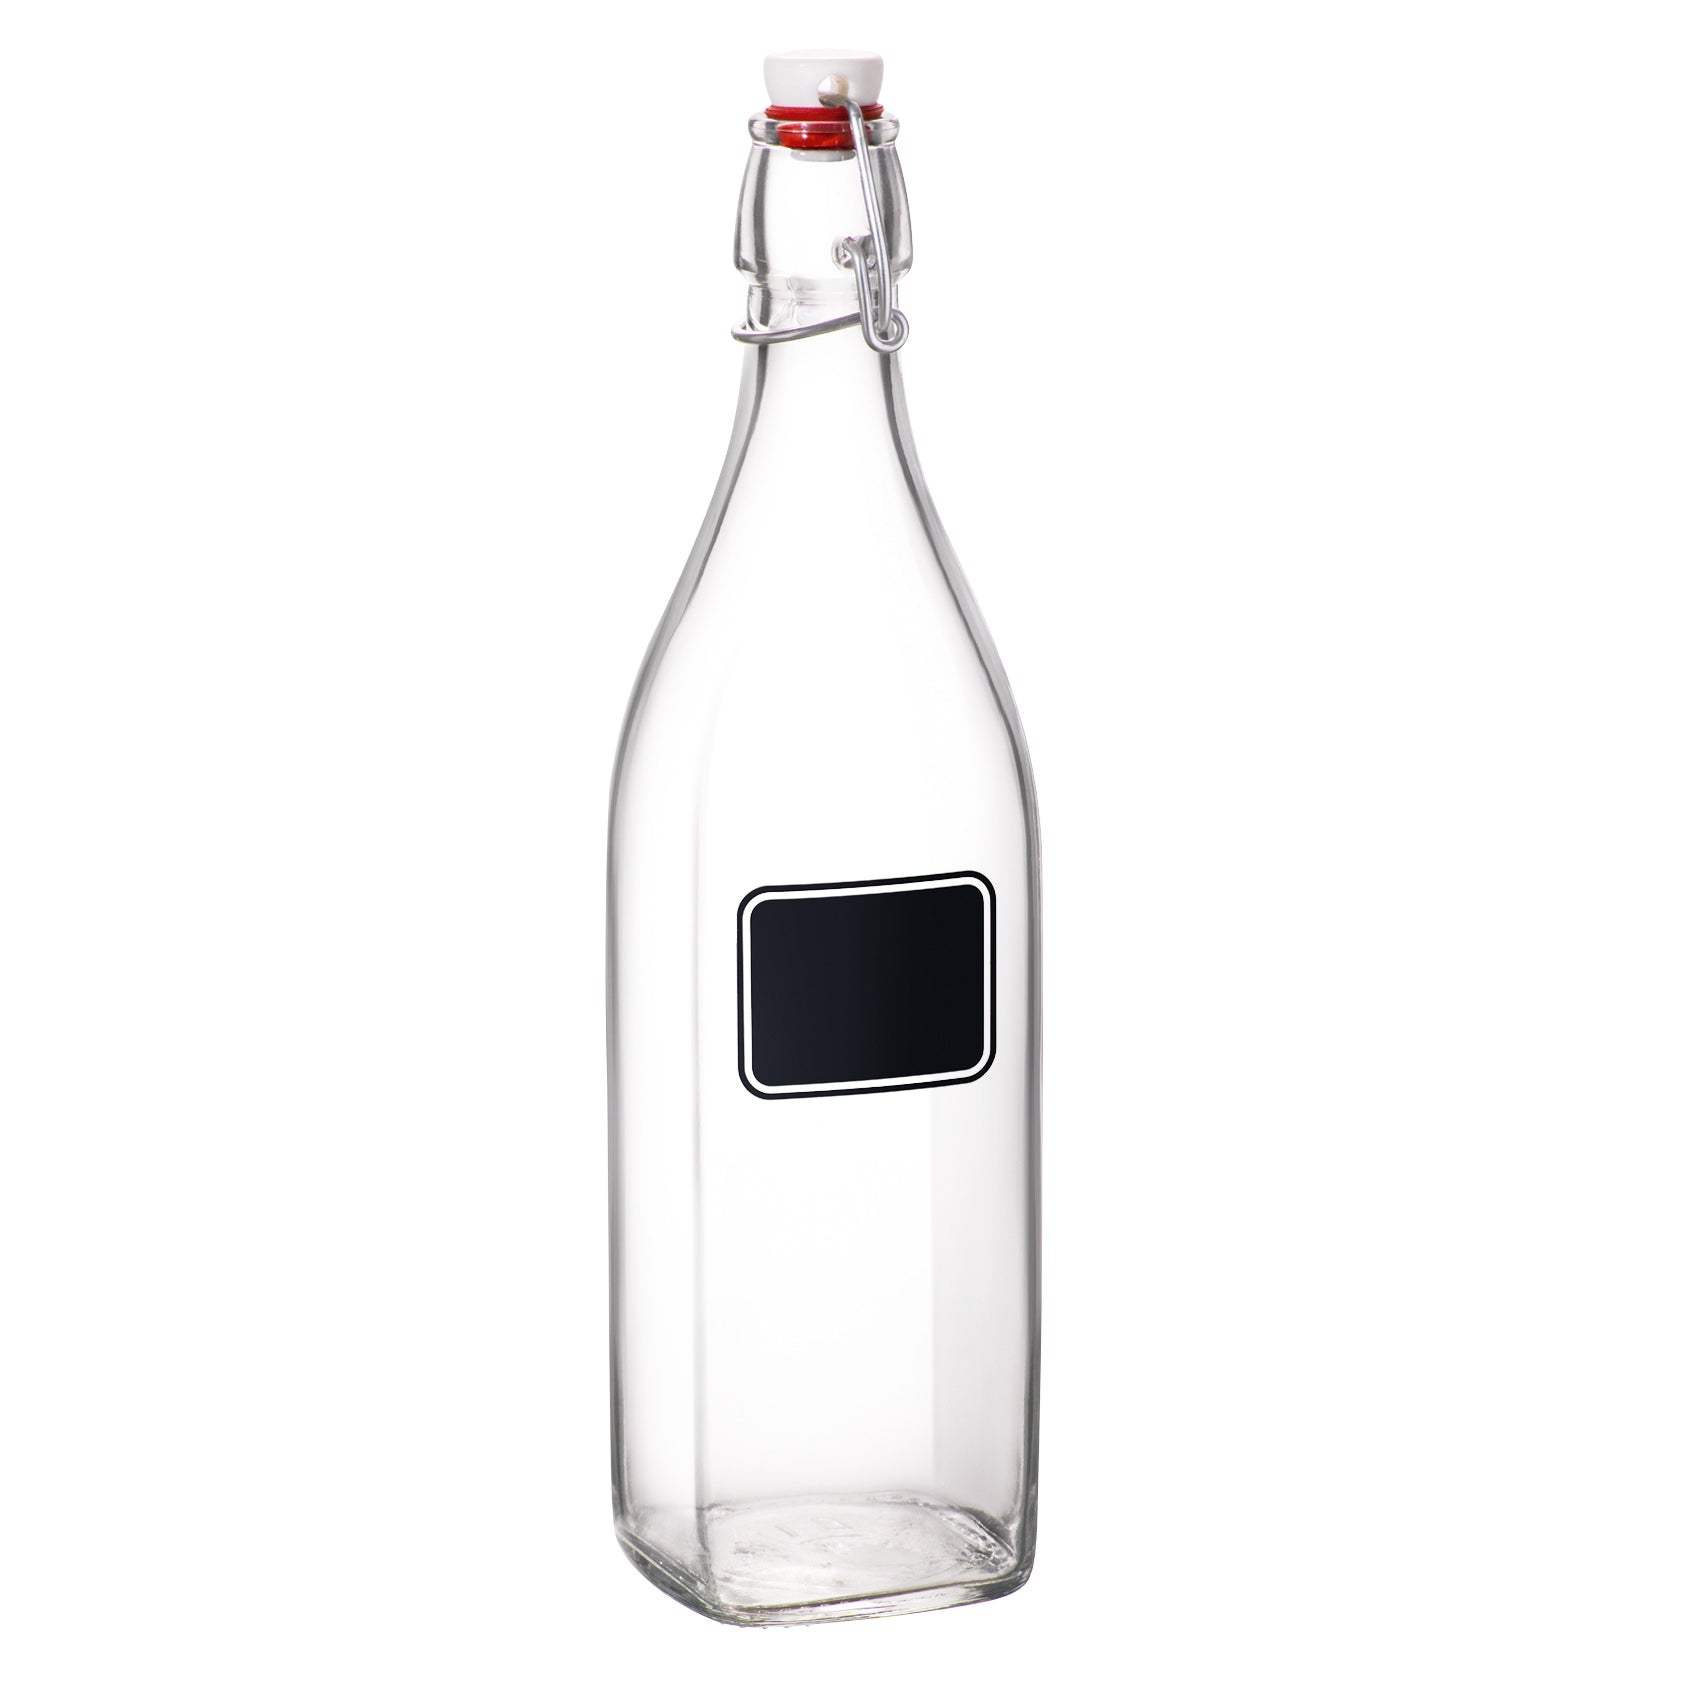 Swing 33.75 oz. Swing-Top Glass Bottle, Chalk (Set of 6)